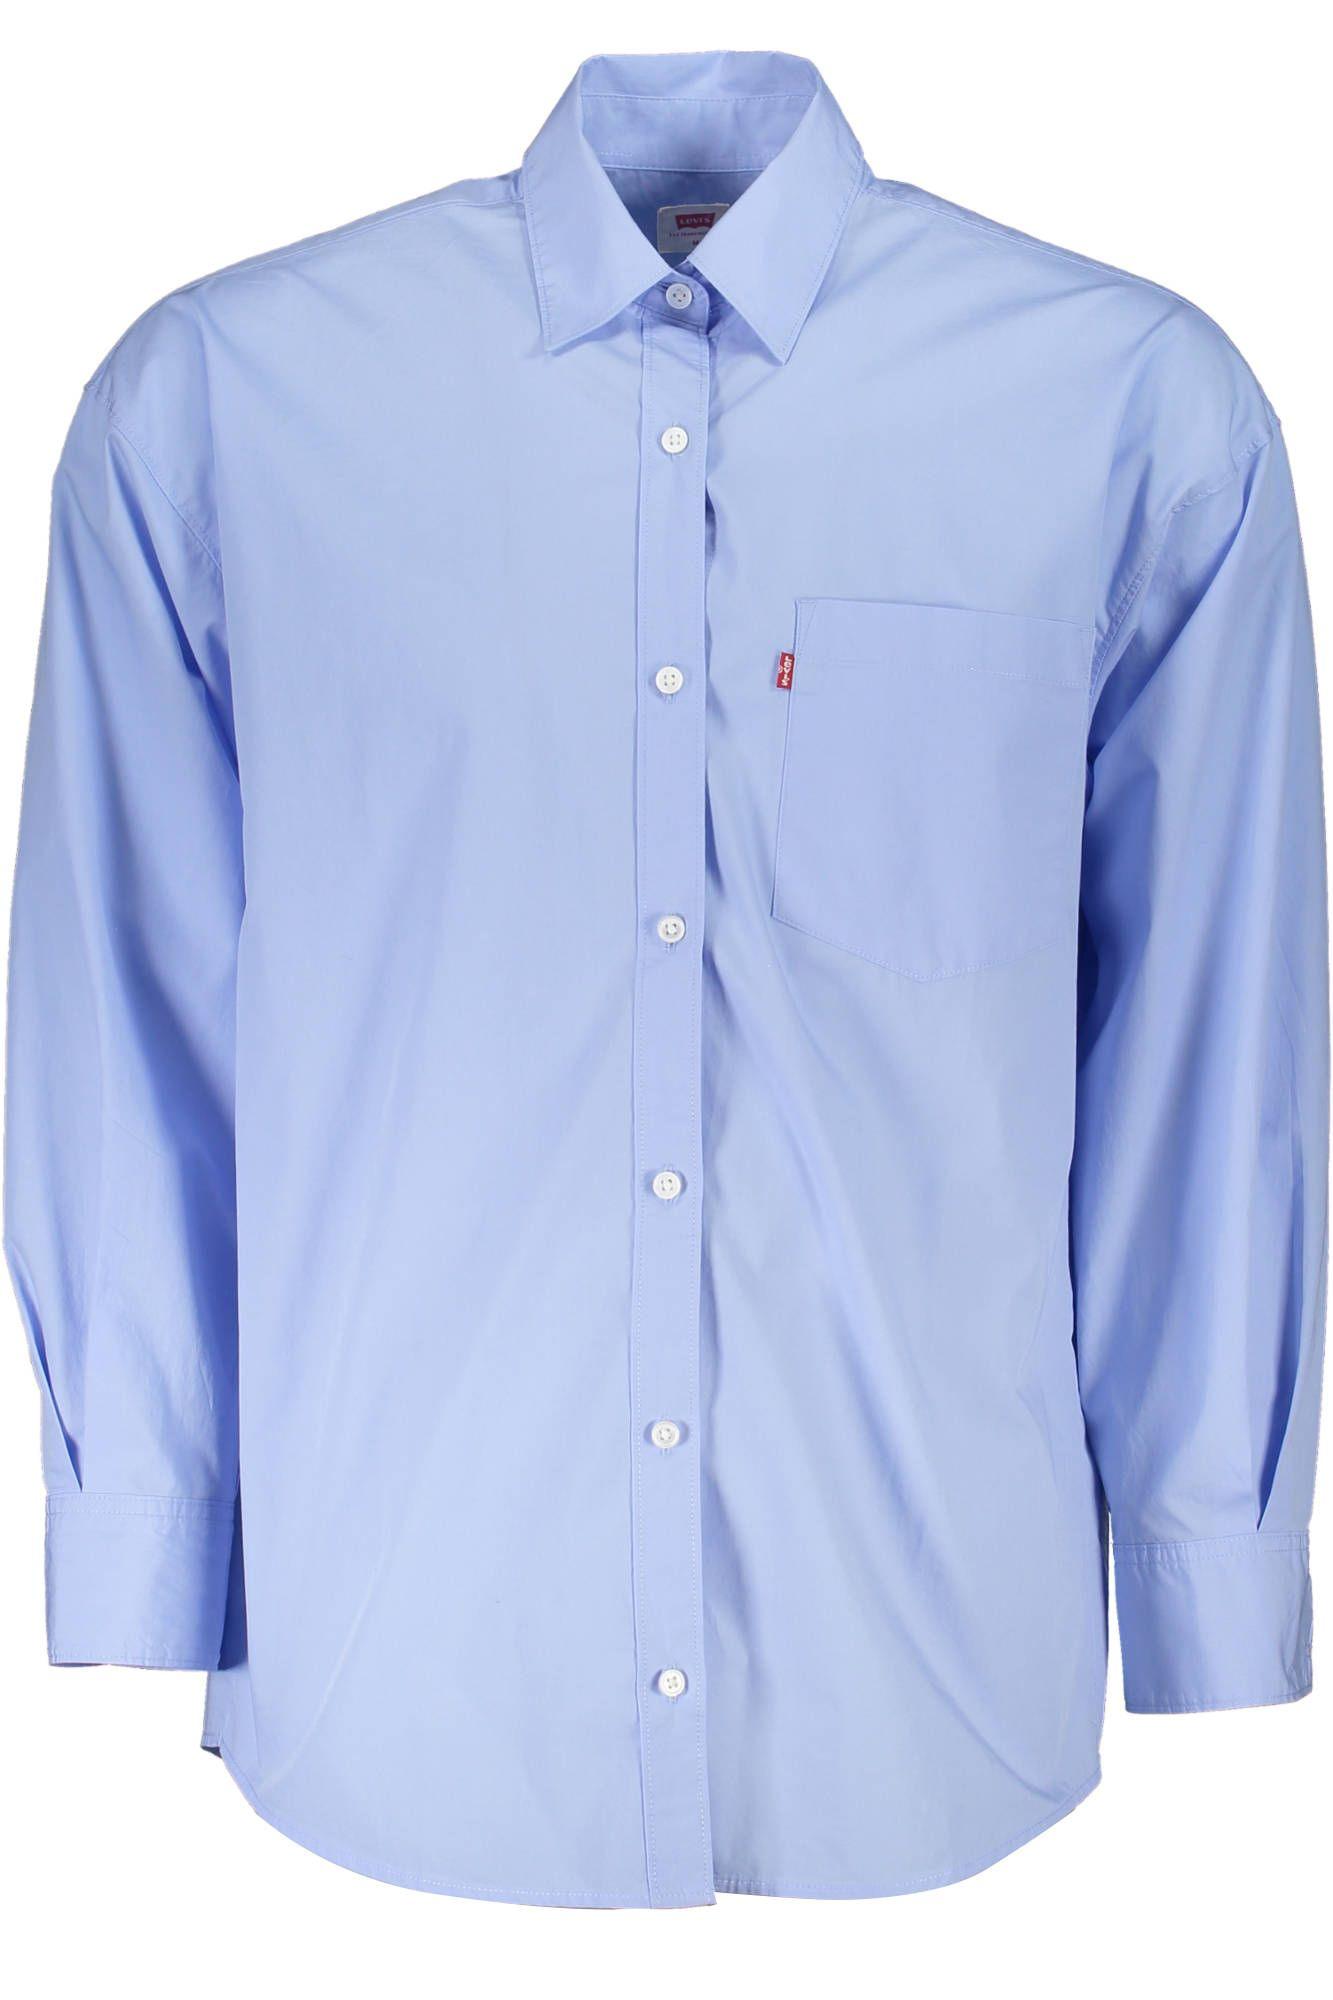 Elegant Light Blue Long-Sleeved Shirt - Divitiae Glamour